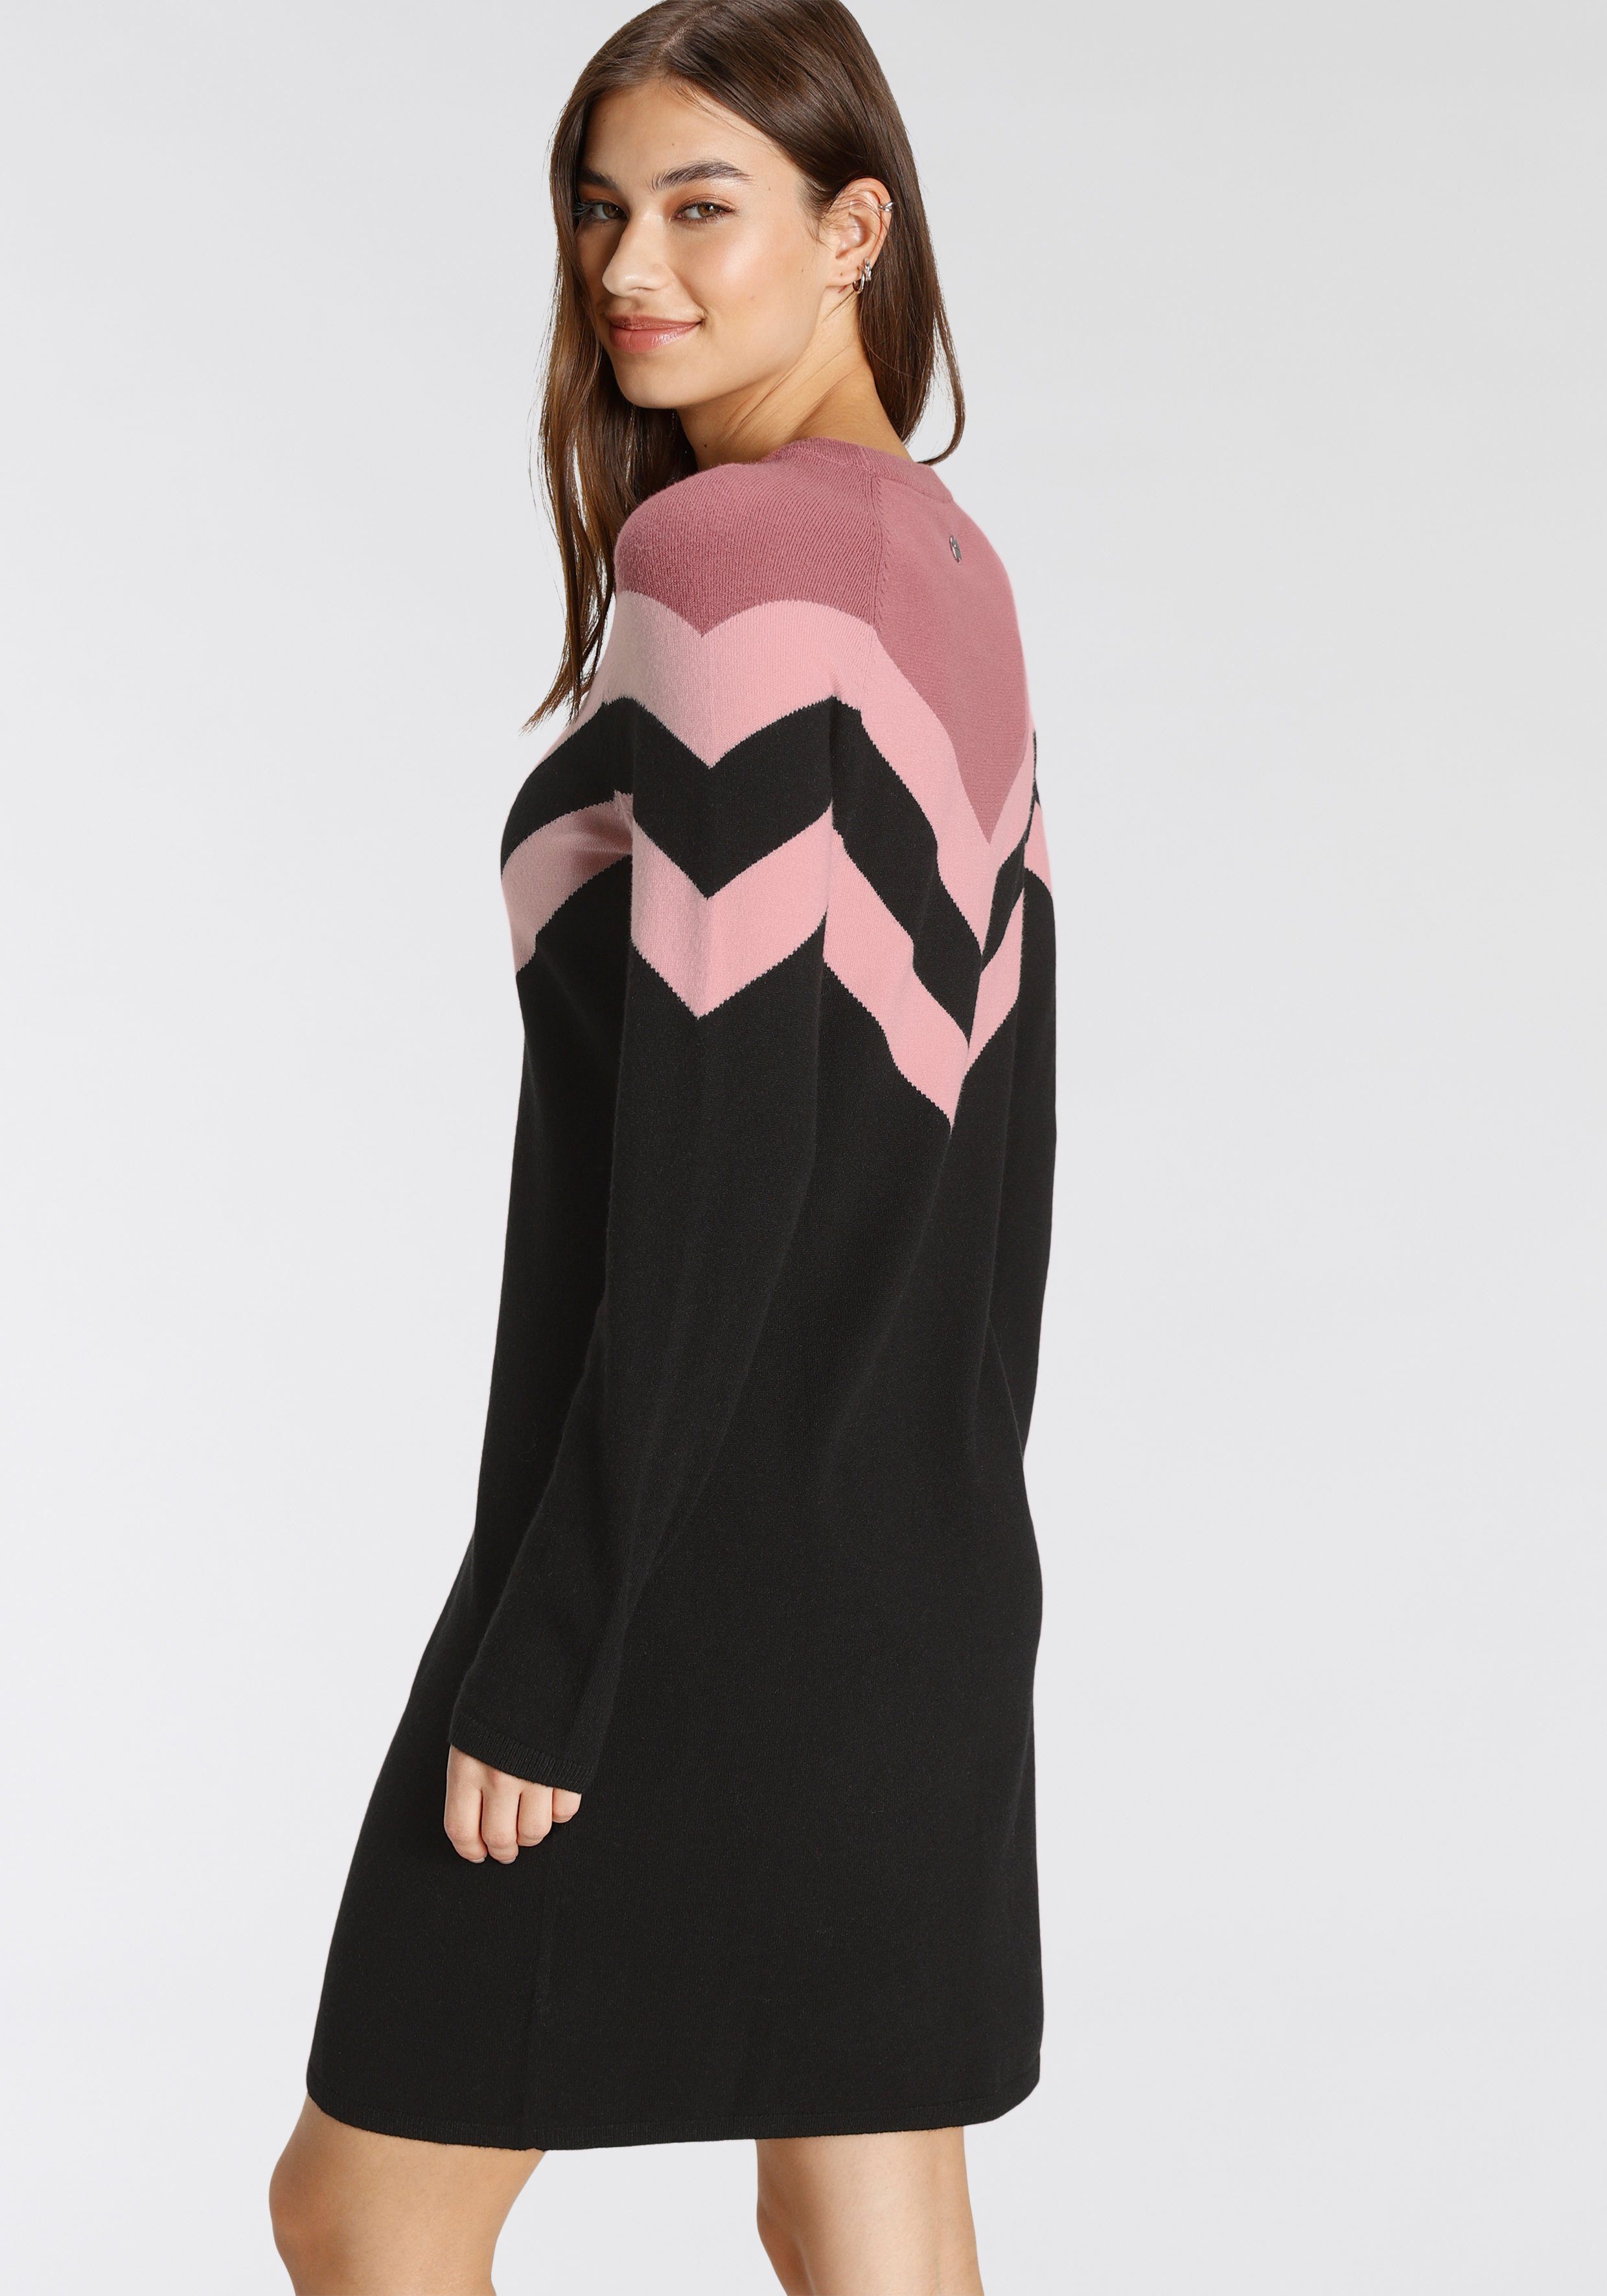 Tamaris Streifen-Muster schwarz Strickkleid bordeaux rosa mit